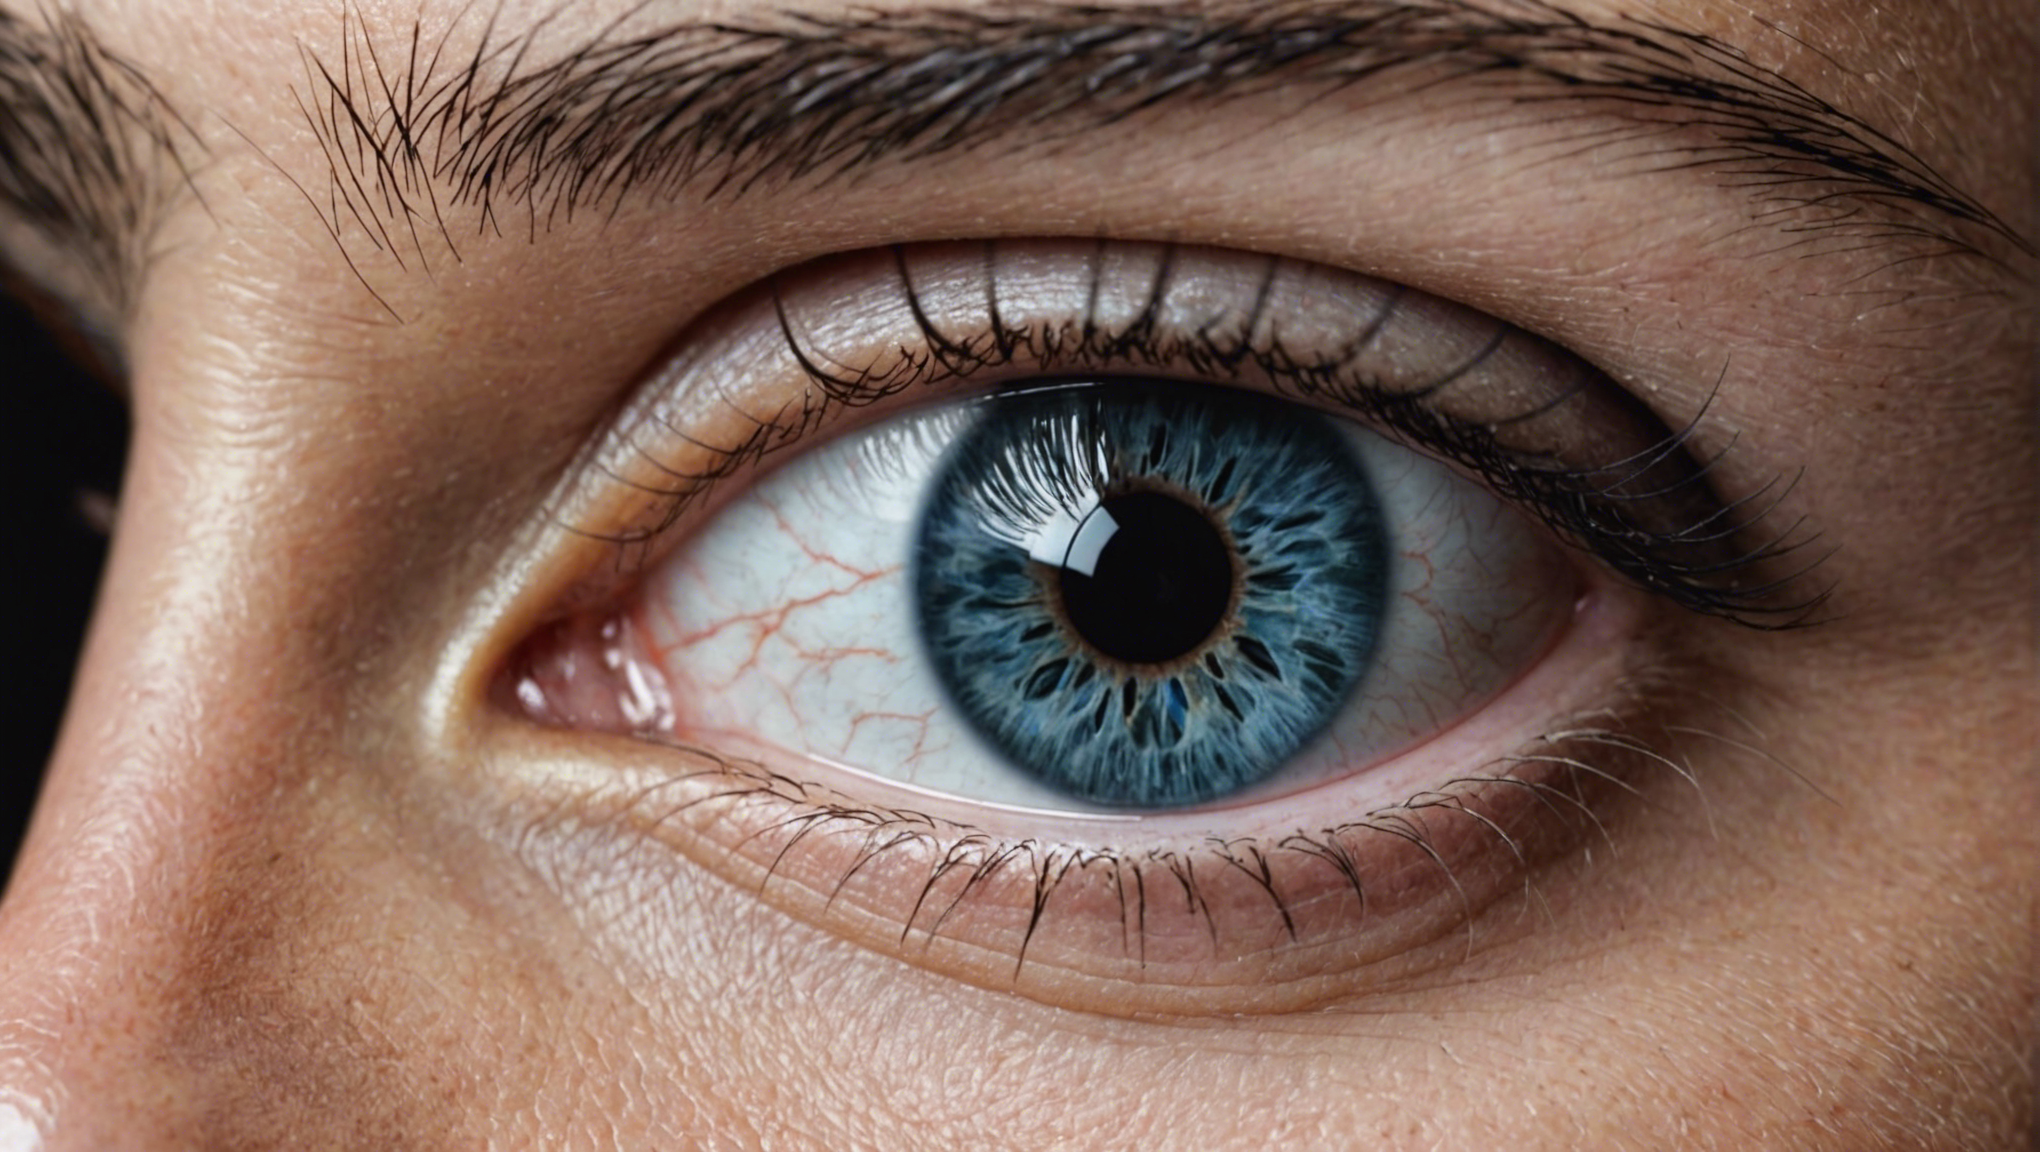 découvrez les risques et complications liés à la chirurgie des yeux, et les mesures de prévention pour une opération en toute sécurité.